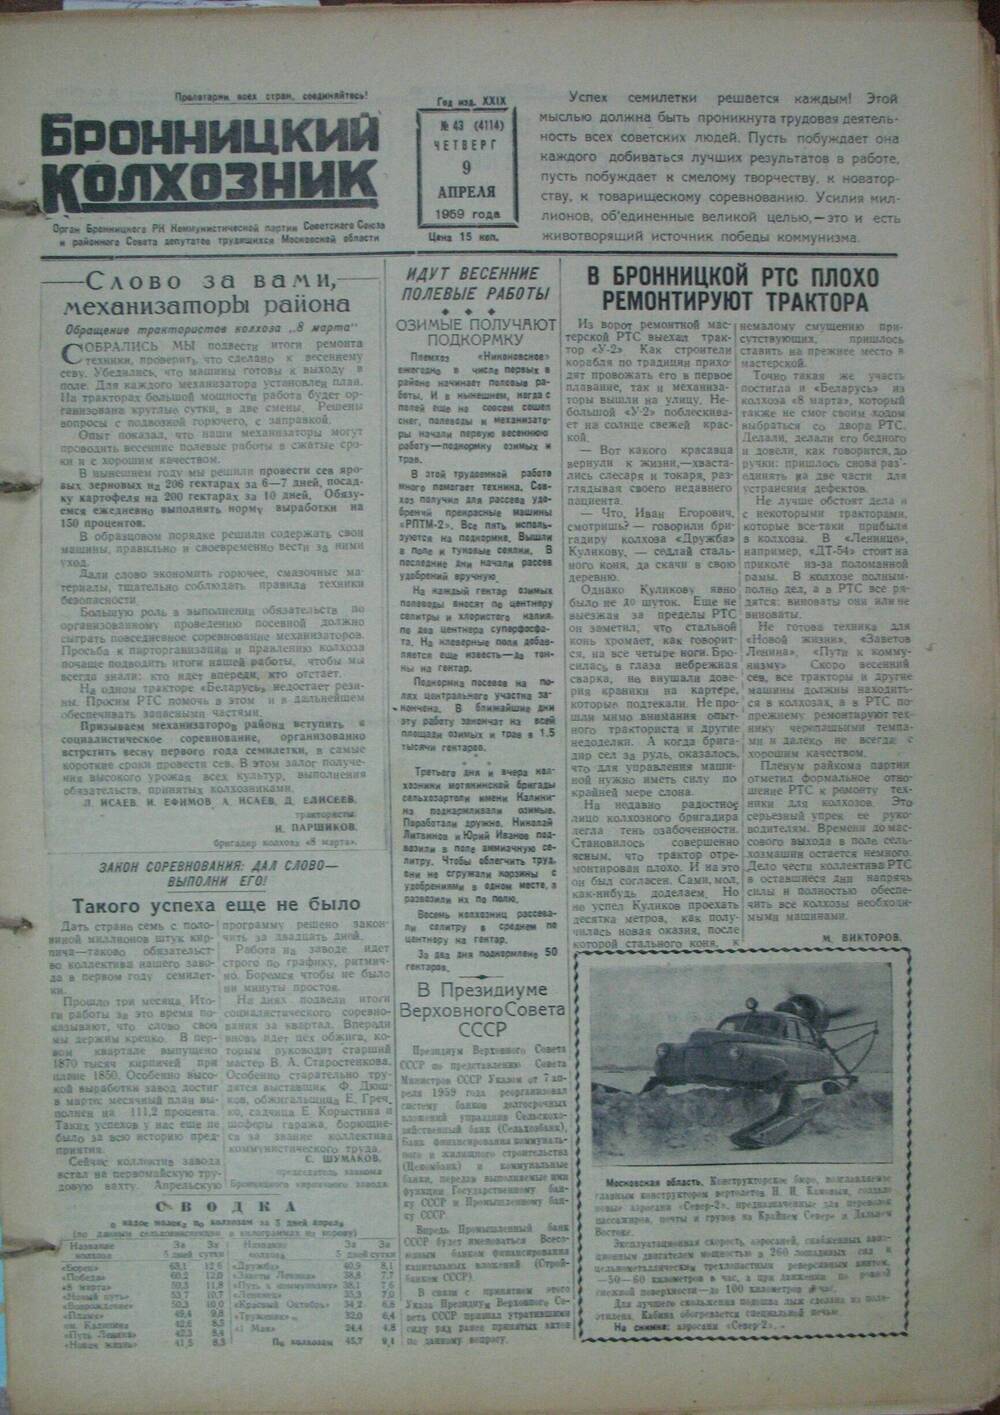 Бронницкий колхозник,  газета № 43 от 9 апреля 1959г